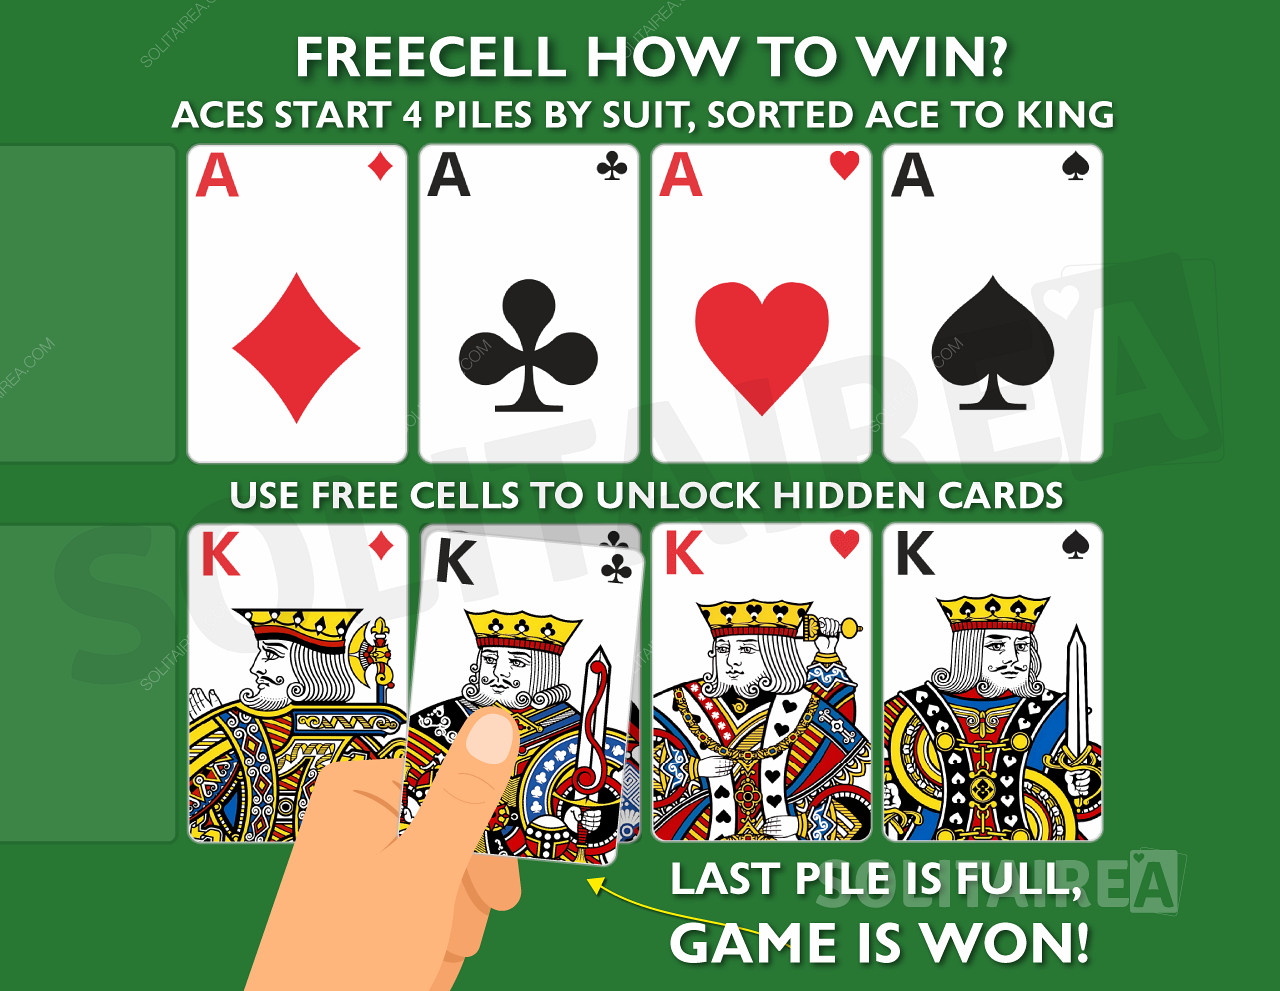 ¿Cómo ganar el juego? Completa los 4 montones de cartas del mismo palo, clasificadas del As al Rey.